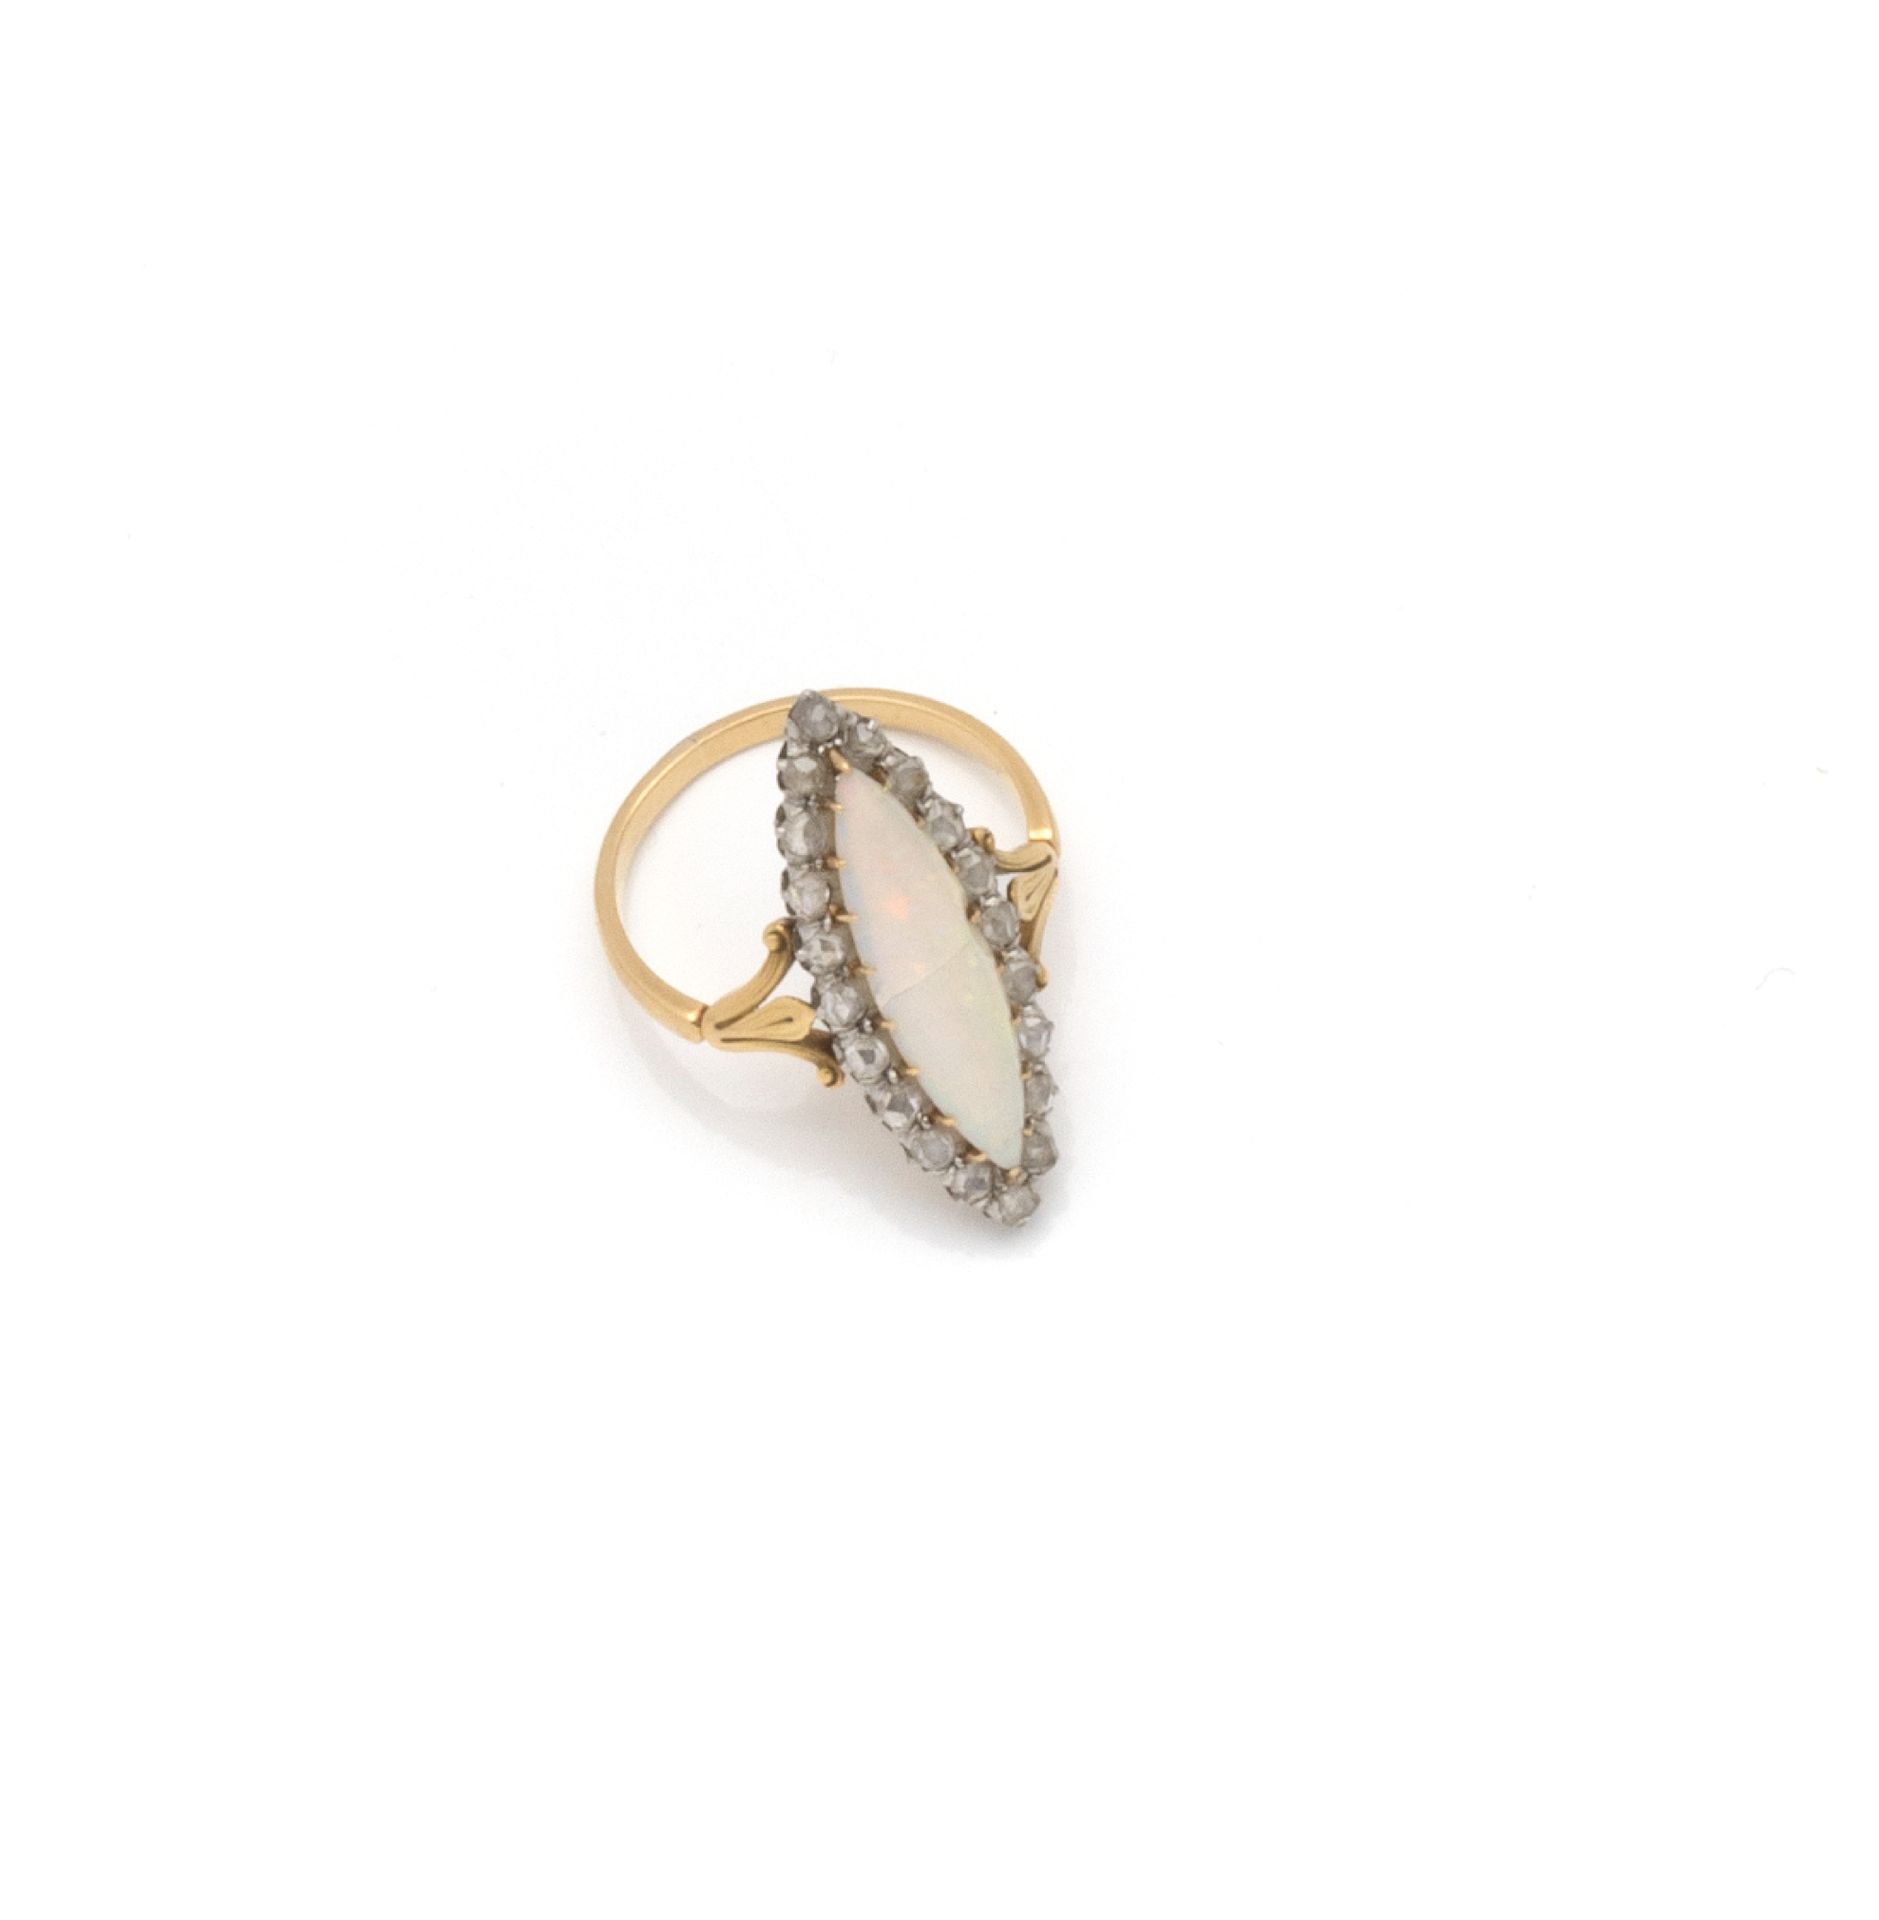 Null 18K（750/1000）黄金榄尖形戒指，爪式镶嵌的脐带式切割蛋白石（有裂纹），爪式镶嵌的20颗玫瑰切割钻石。

编号为8015。

1838至191&hellip;